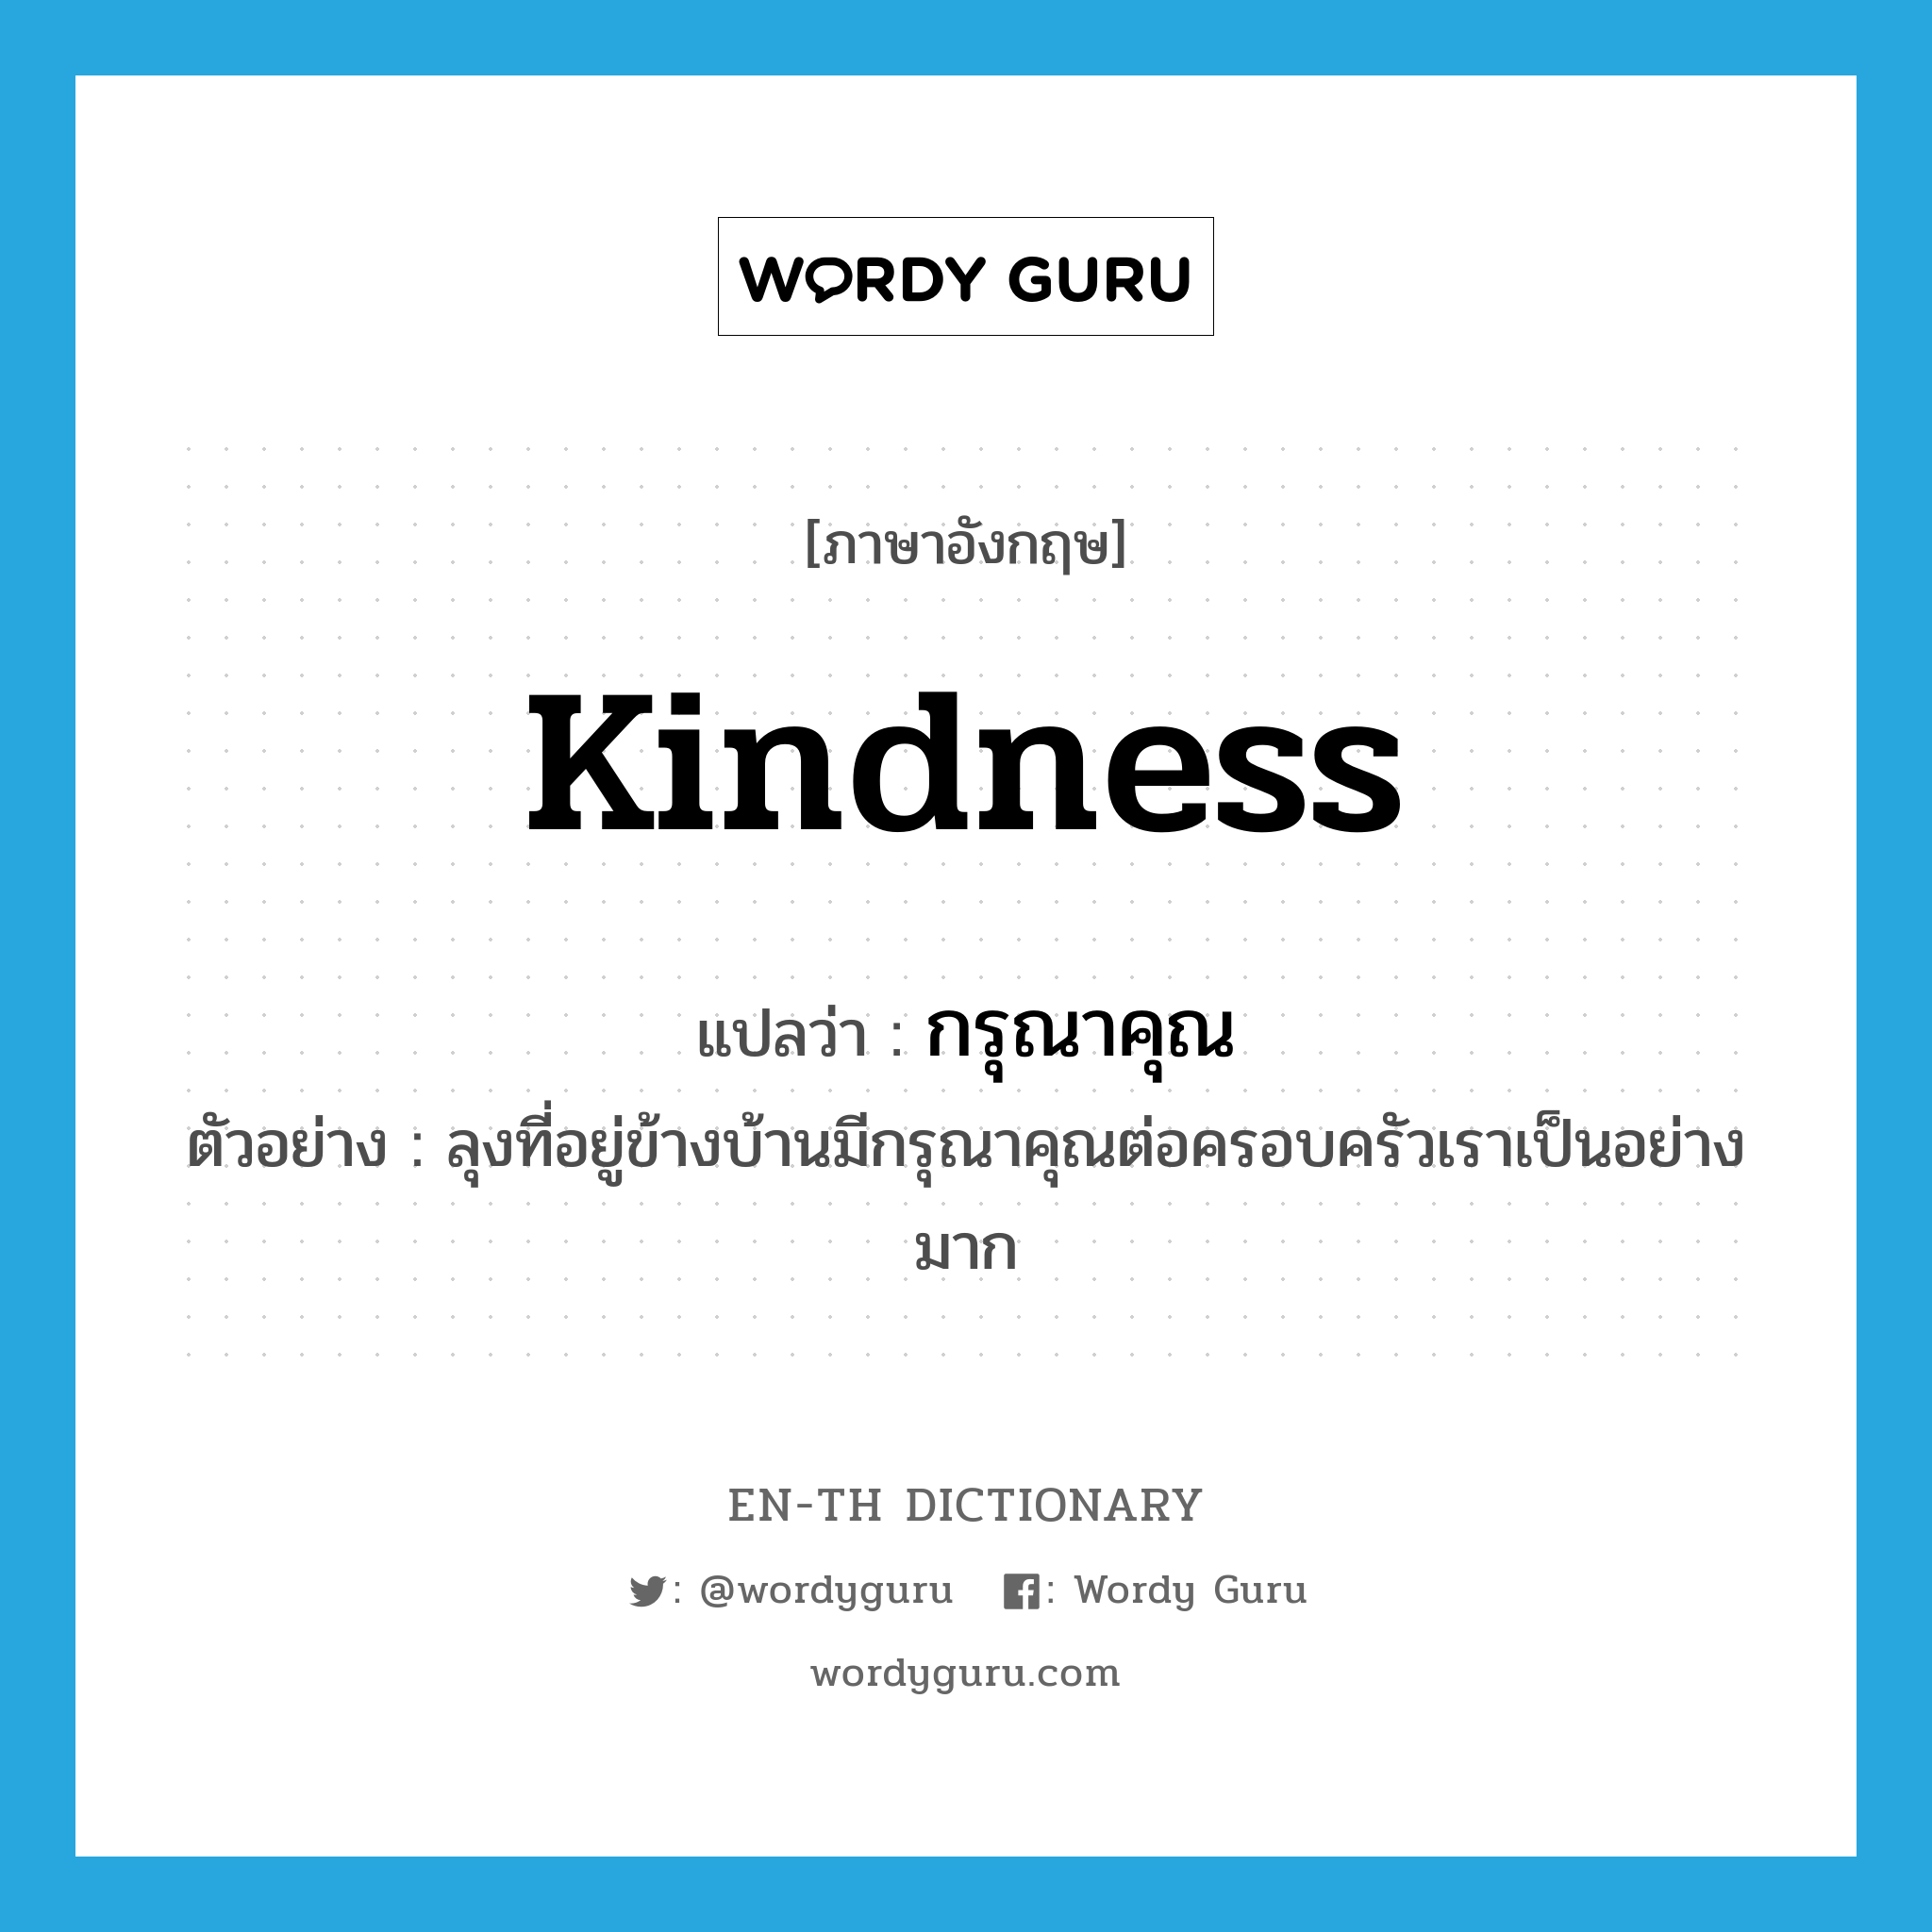 kindness แปลว่า?, คำศัพท์ภาษาอังกฤษ kindness แปลว่า กรุณาคุณ ประเภท N ตัวอย่าง ลุงที่อยู่ข้างบ้านมีกรุณาคุณต่อครอบครัวเราเป็นอย่างมาก หมวด N